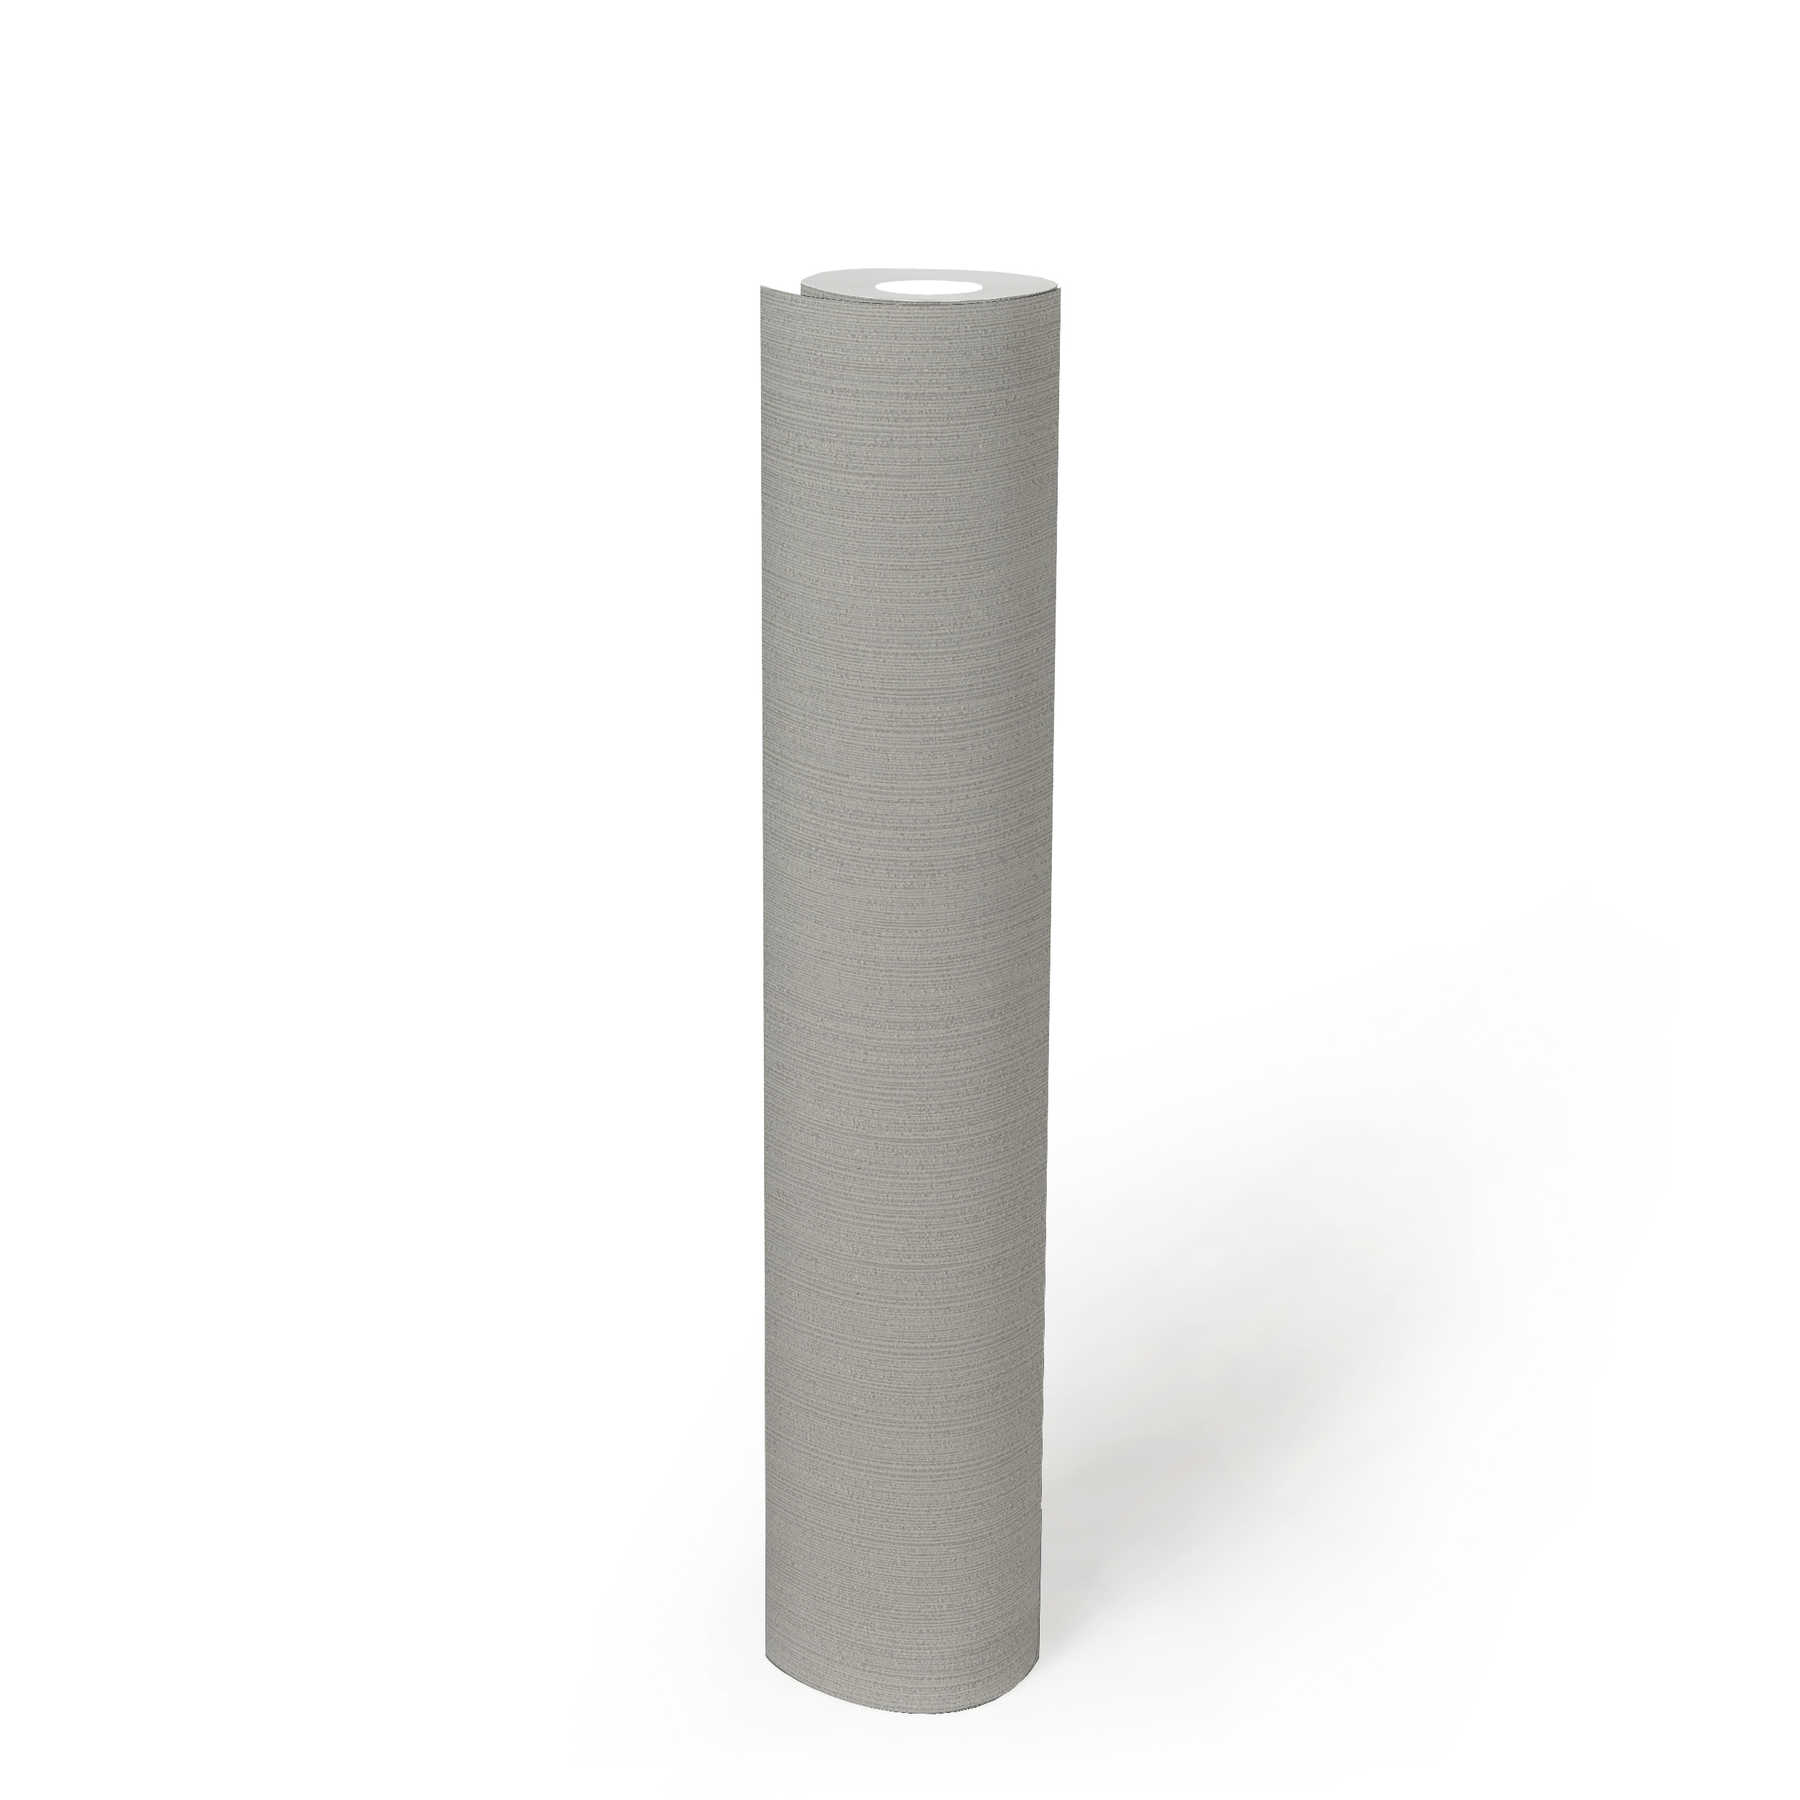             Neutrale Tapete einfarbig mit Strukturprägung – Grau
        